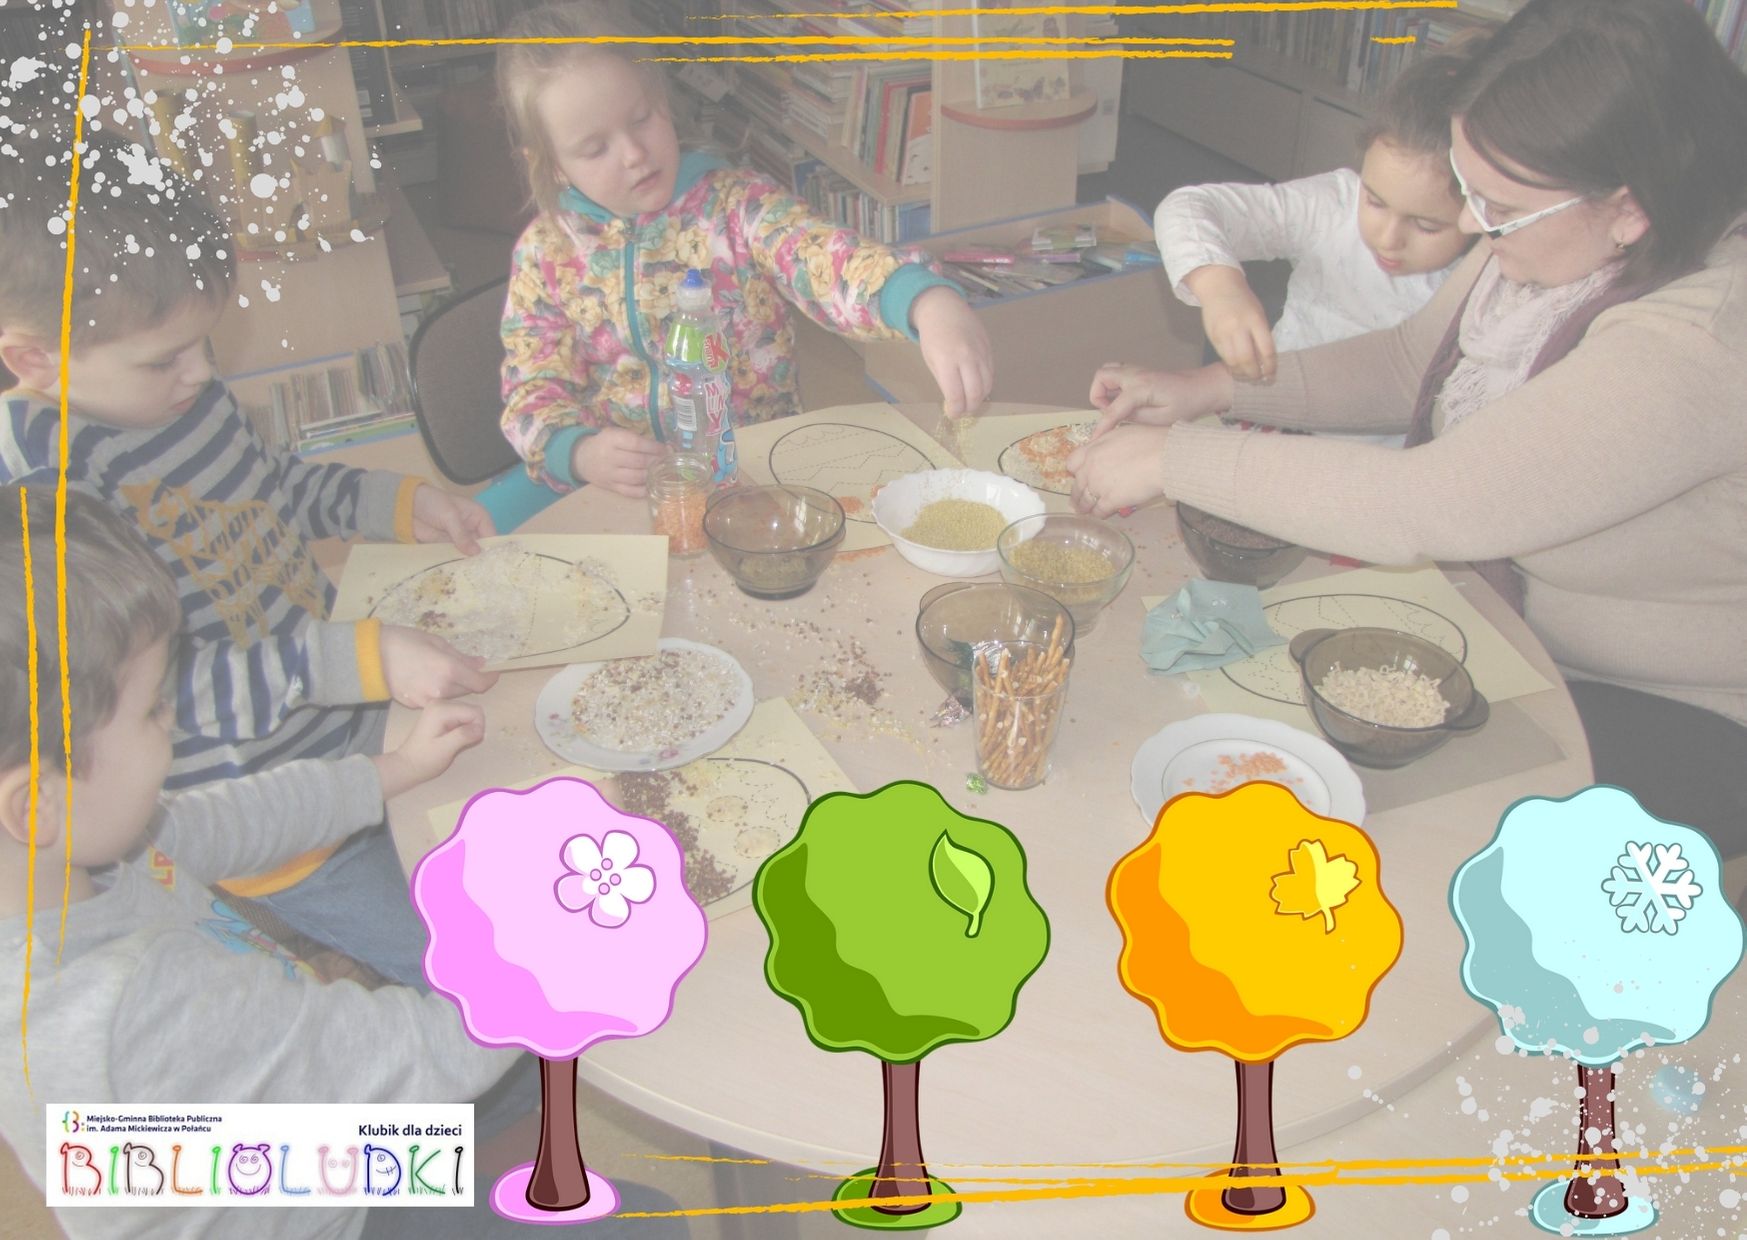 Plakat kolorowy, grupa dzieci wraz z bibliotekarką robi przy stoliku pracę plastyczną